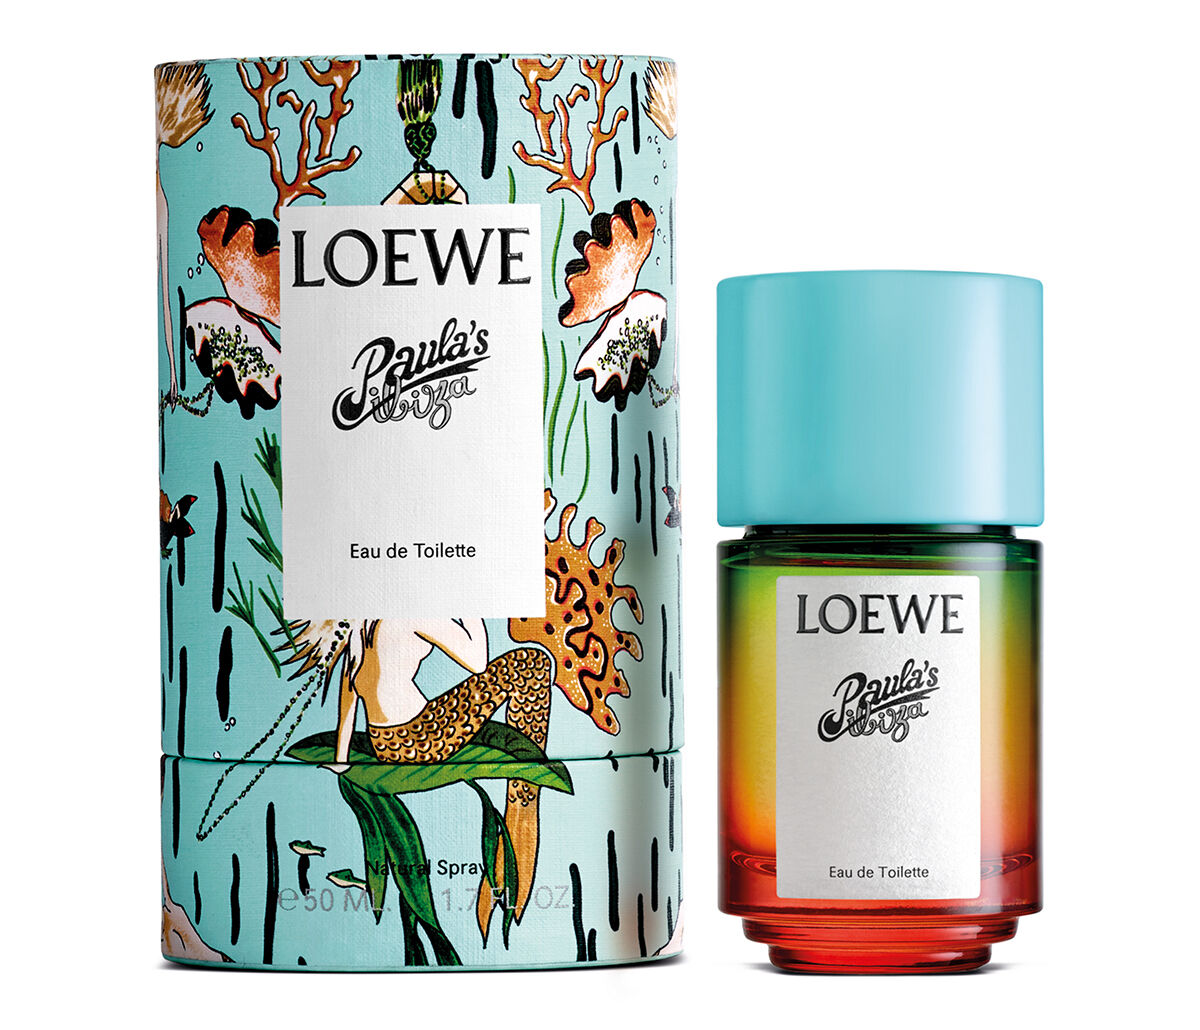 Paula's Ibiza Loewe parfum - un nouveau parfum pour homme et femme 2020